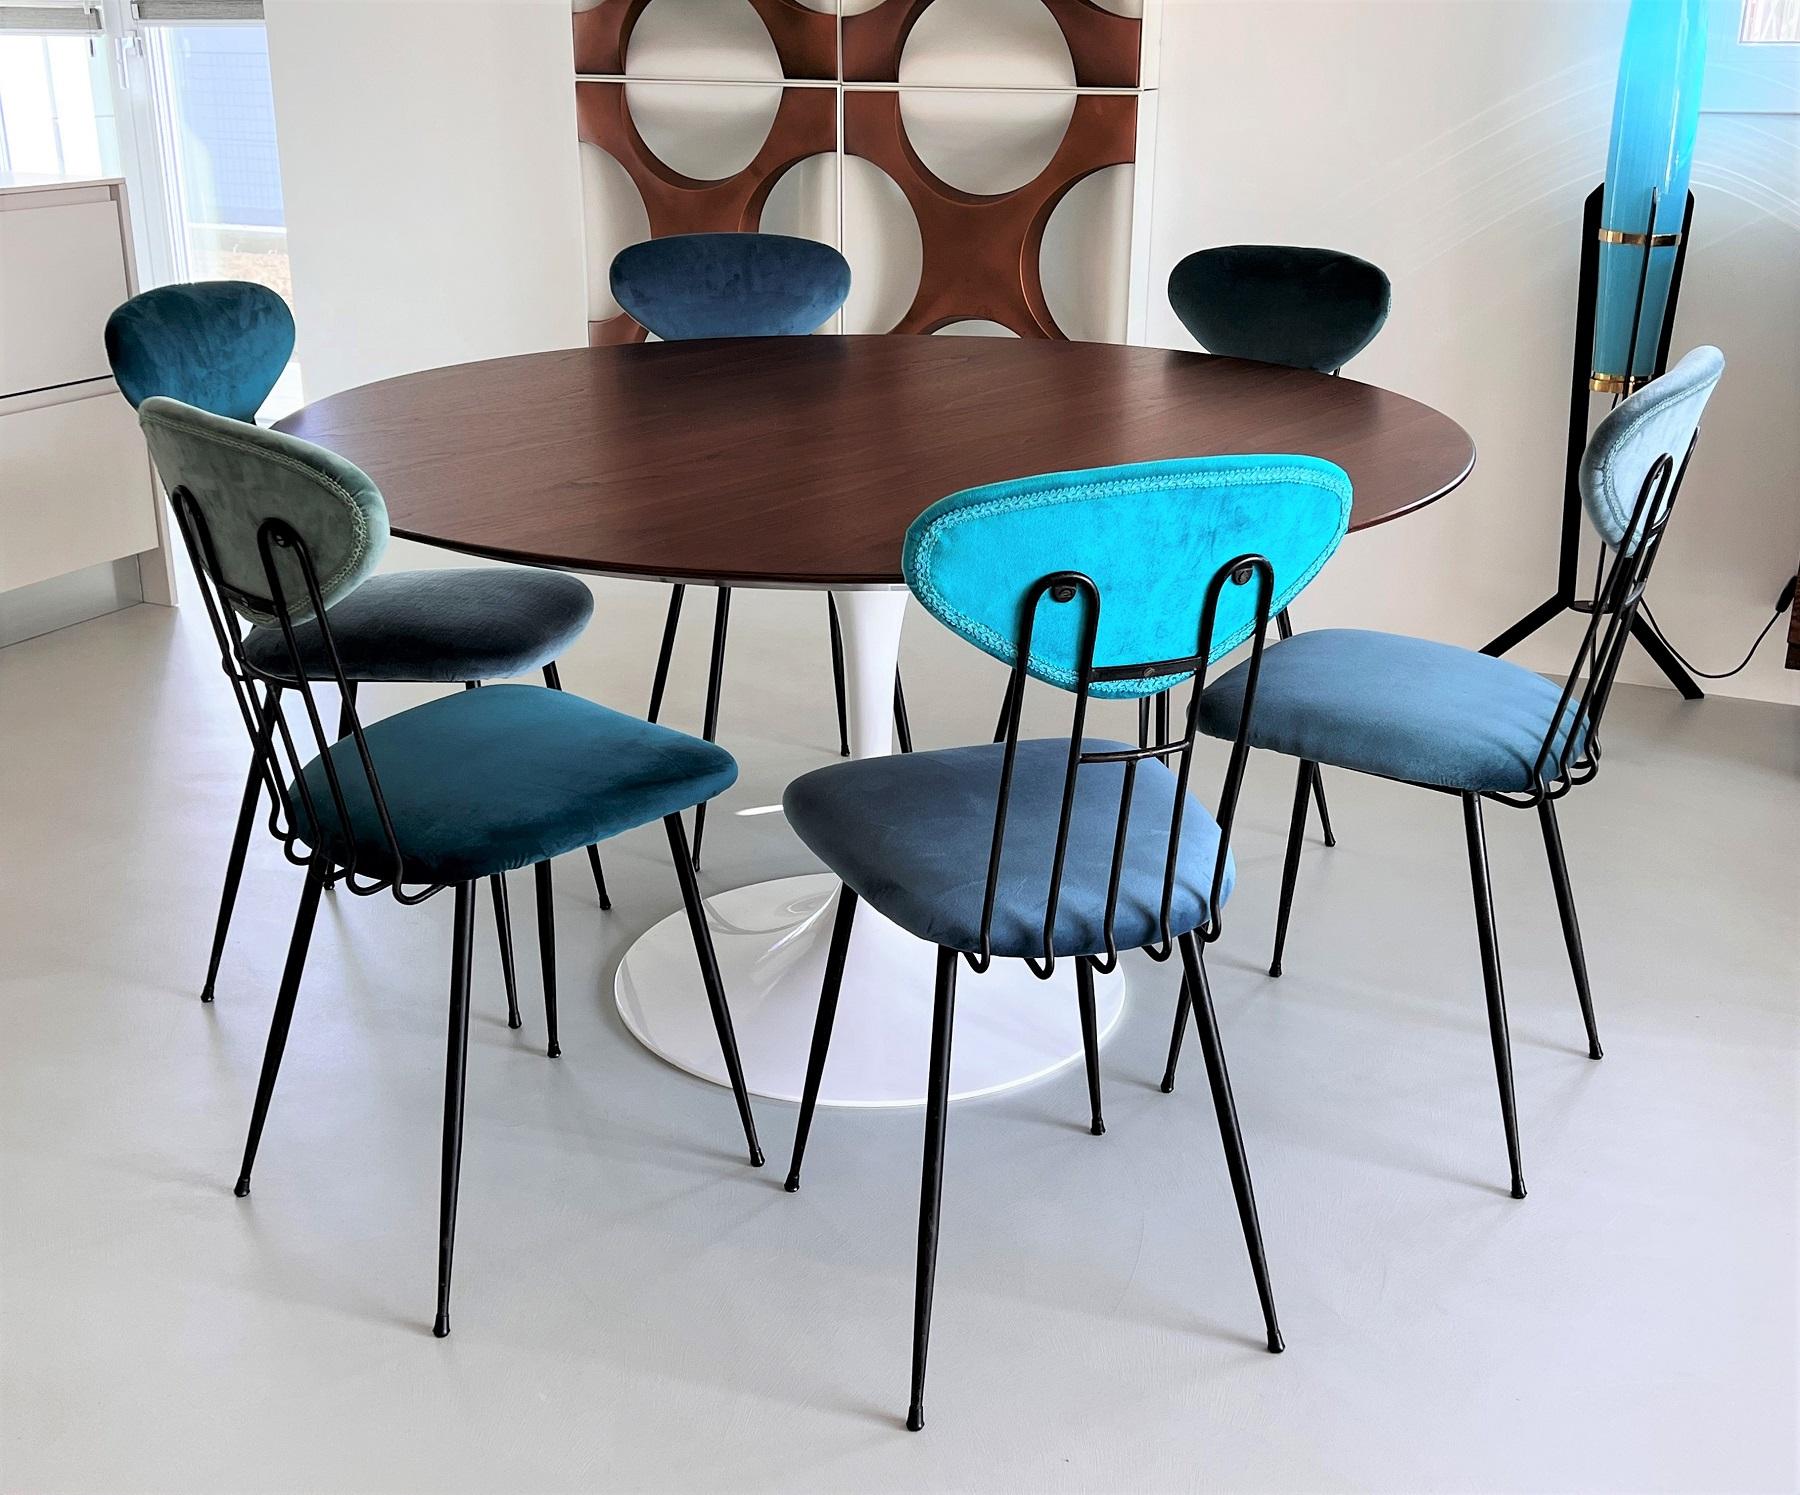 Mid-Century Modern Italian Midcentury Dining Room Chairs Re-Upholstered in Velvet, 1960s For Sale